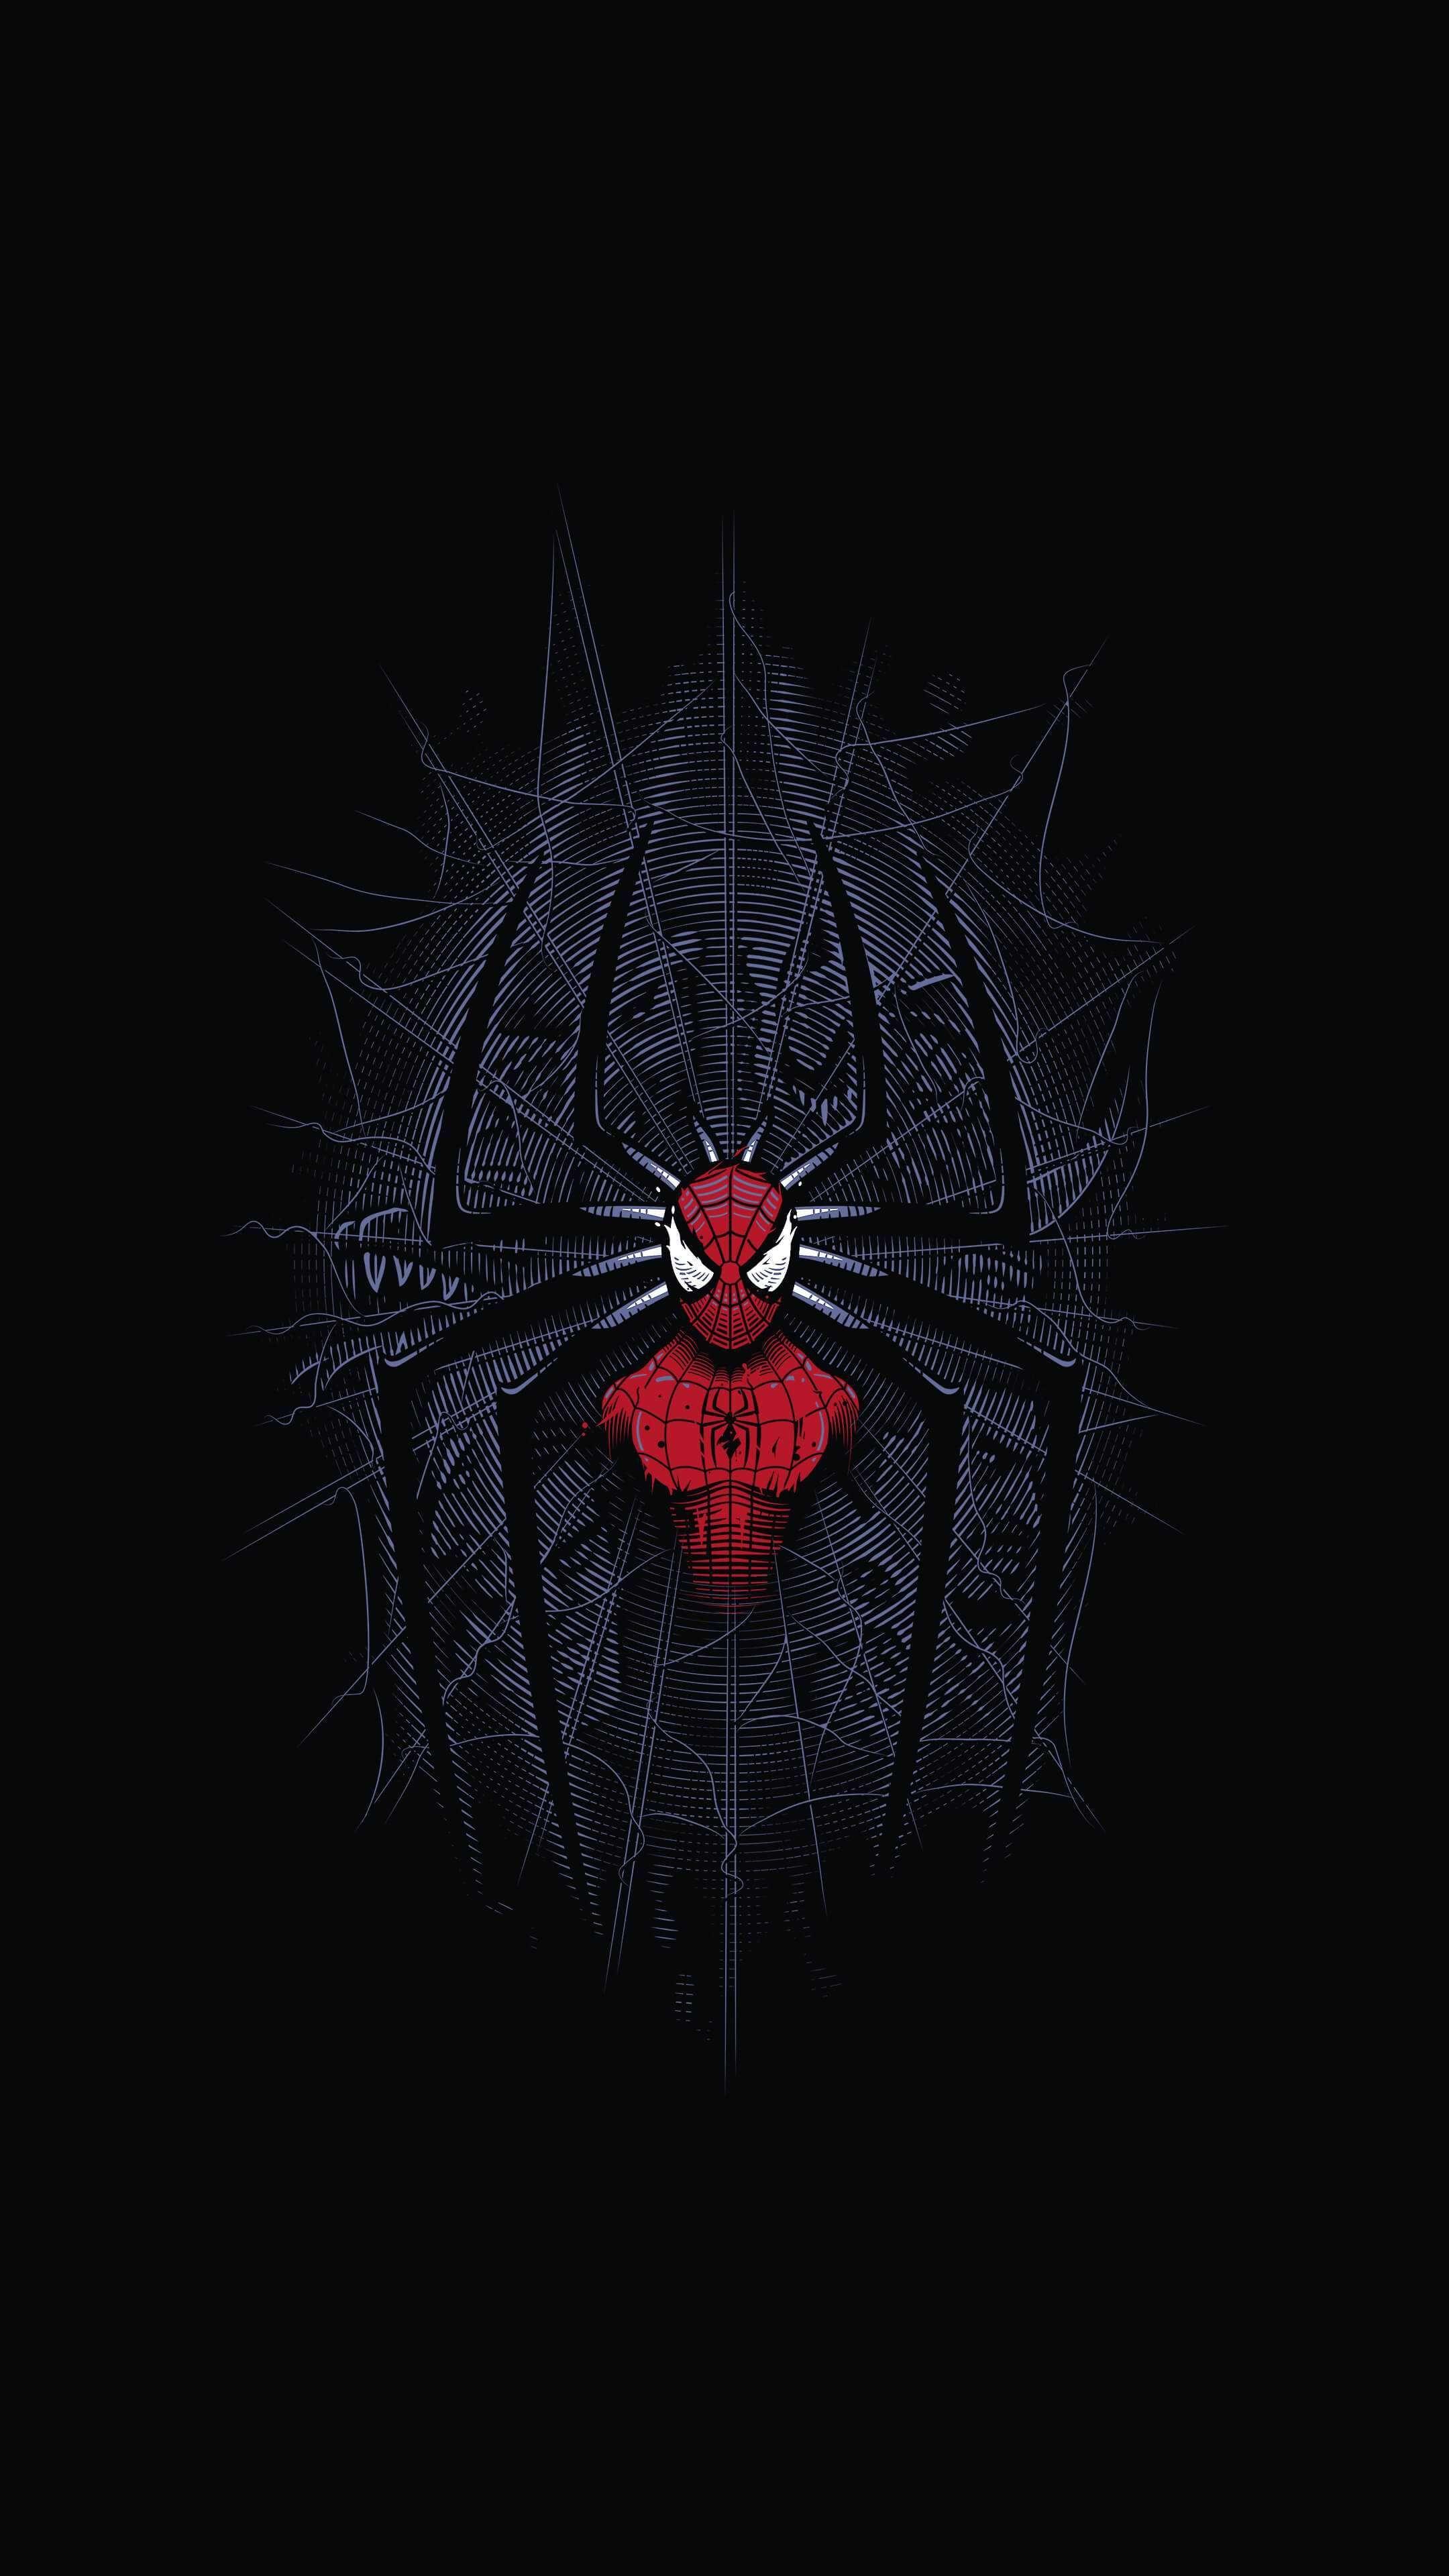 Download wallpapers 4k, Spider-Man black logo, minimal, Spider-Man logo,  red backgrounds, Spiderman, superheroes, Spider-Man 3D logo, Spider-Man  minimalism, Spider-Man for desktop free. Pictures for desktop free